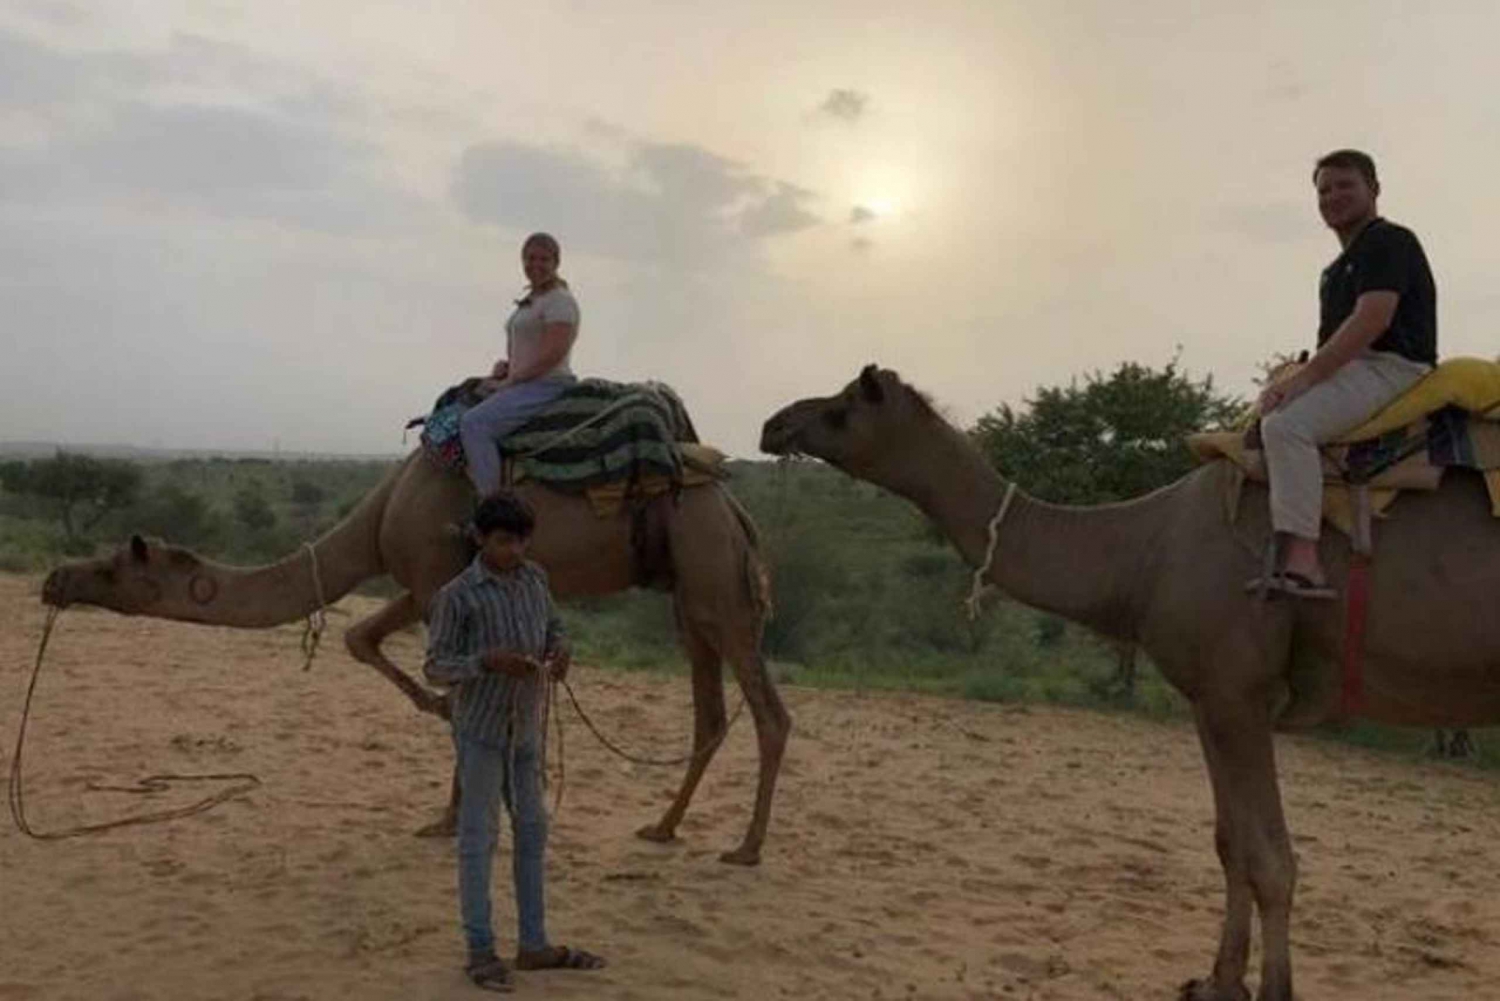 Safári de camelo no deserto - excursão de um dia em Jodhpur